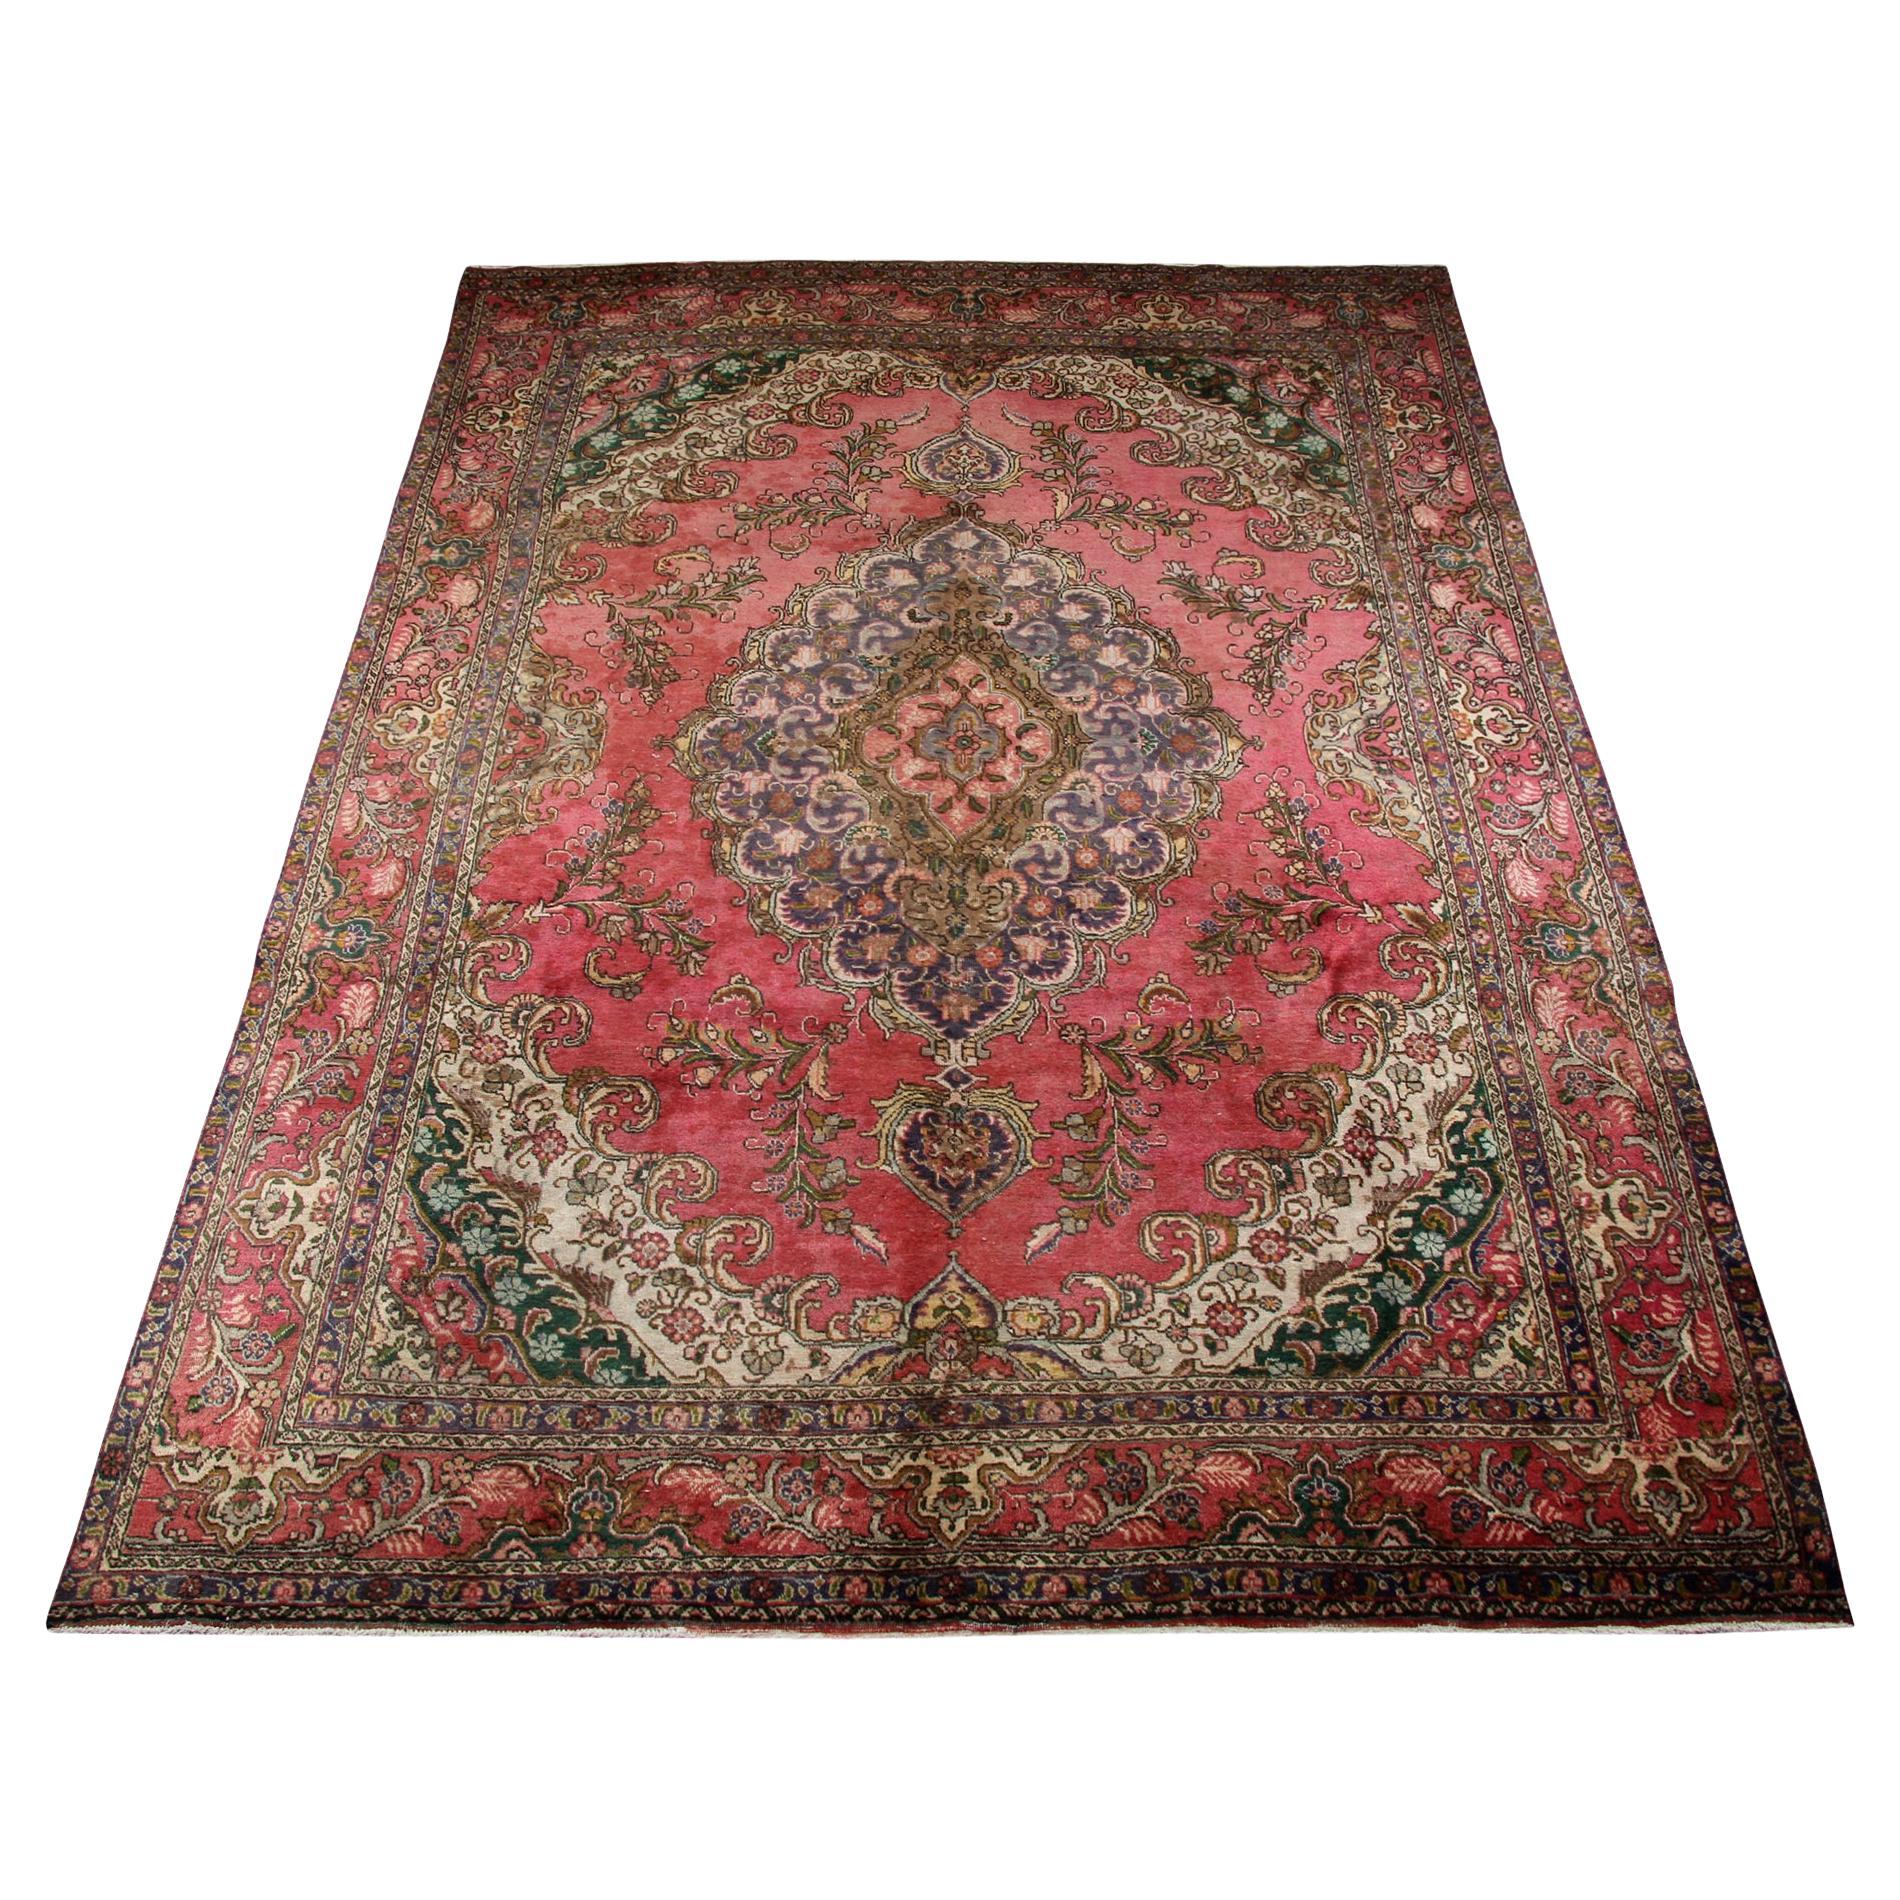 Grand tapis turc vintage fait à la main, tapis de laine rouge, zone orientale